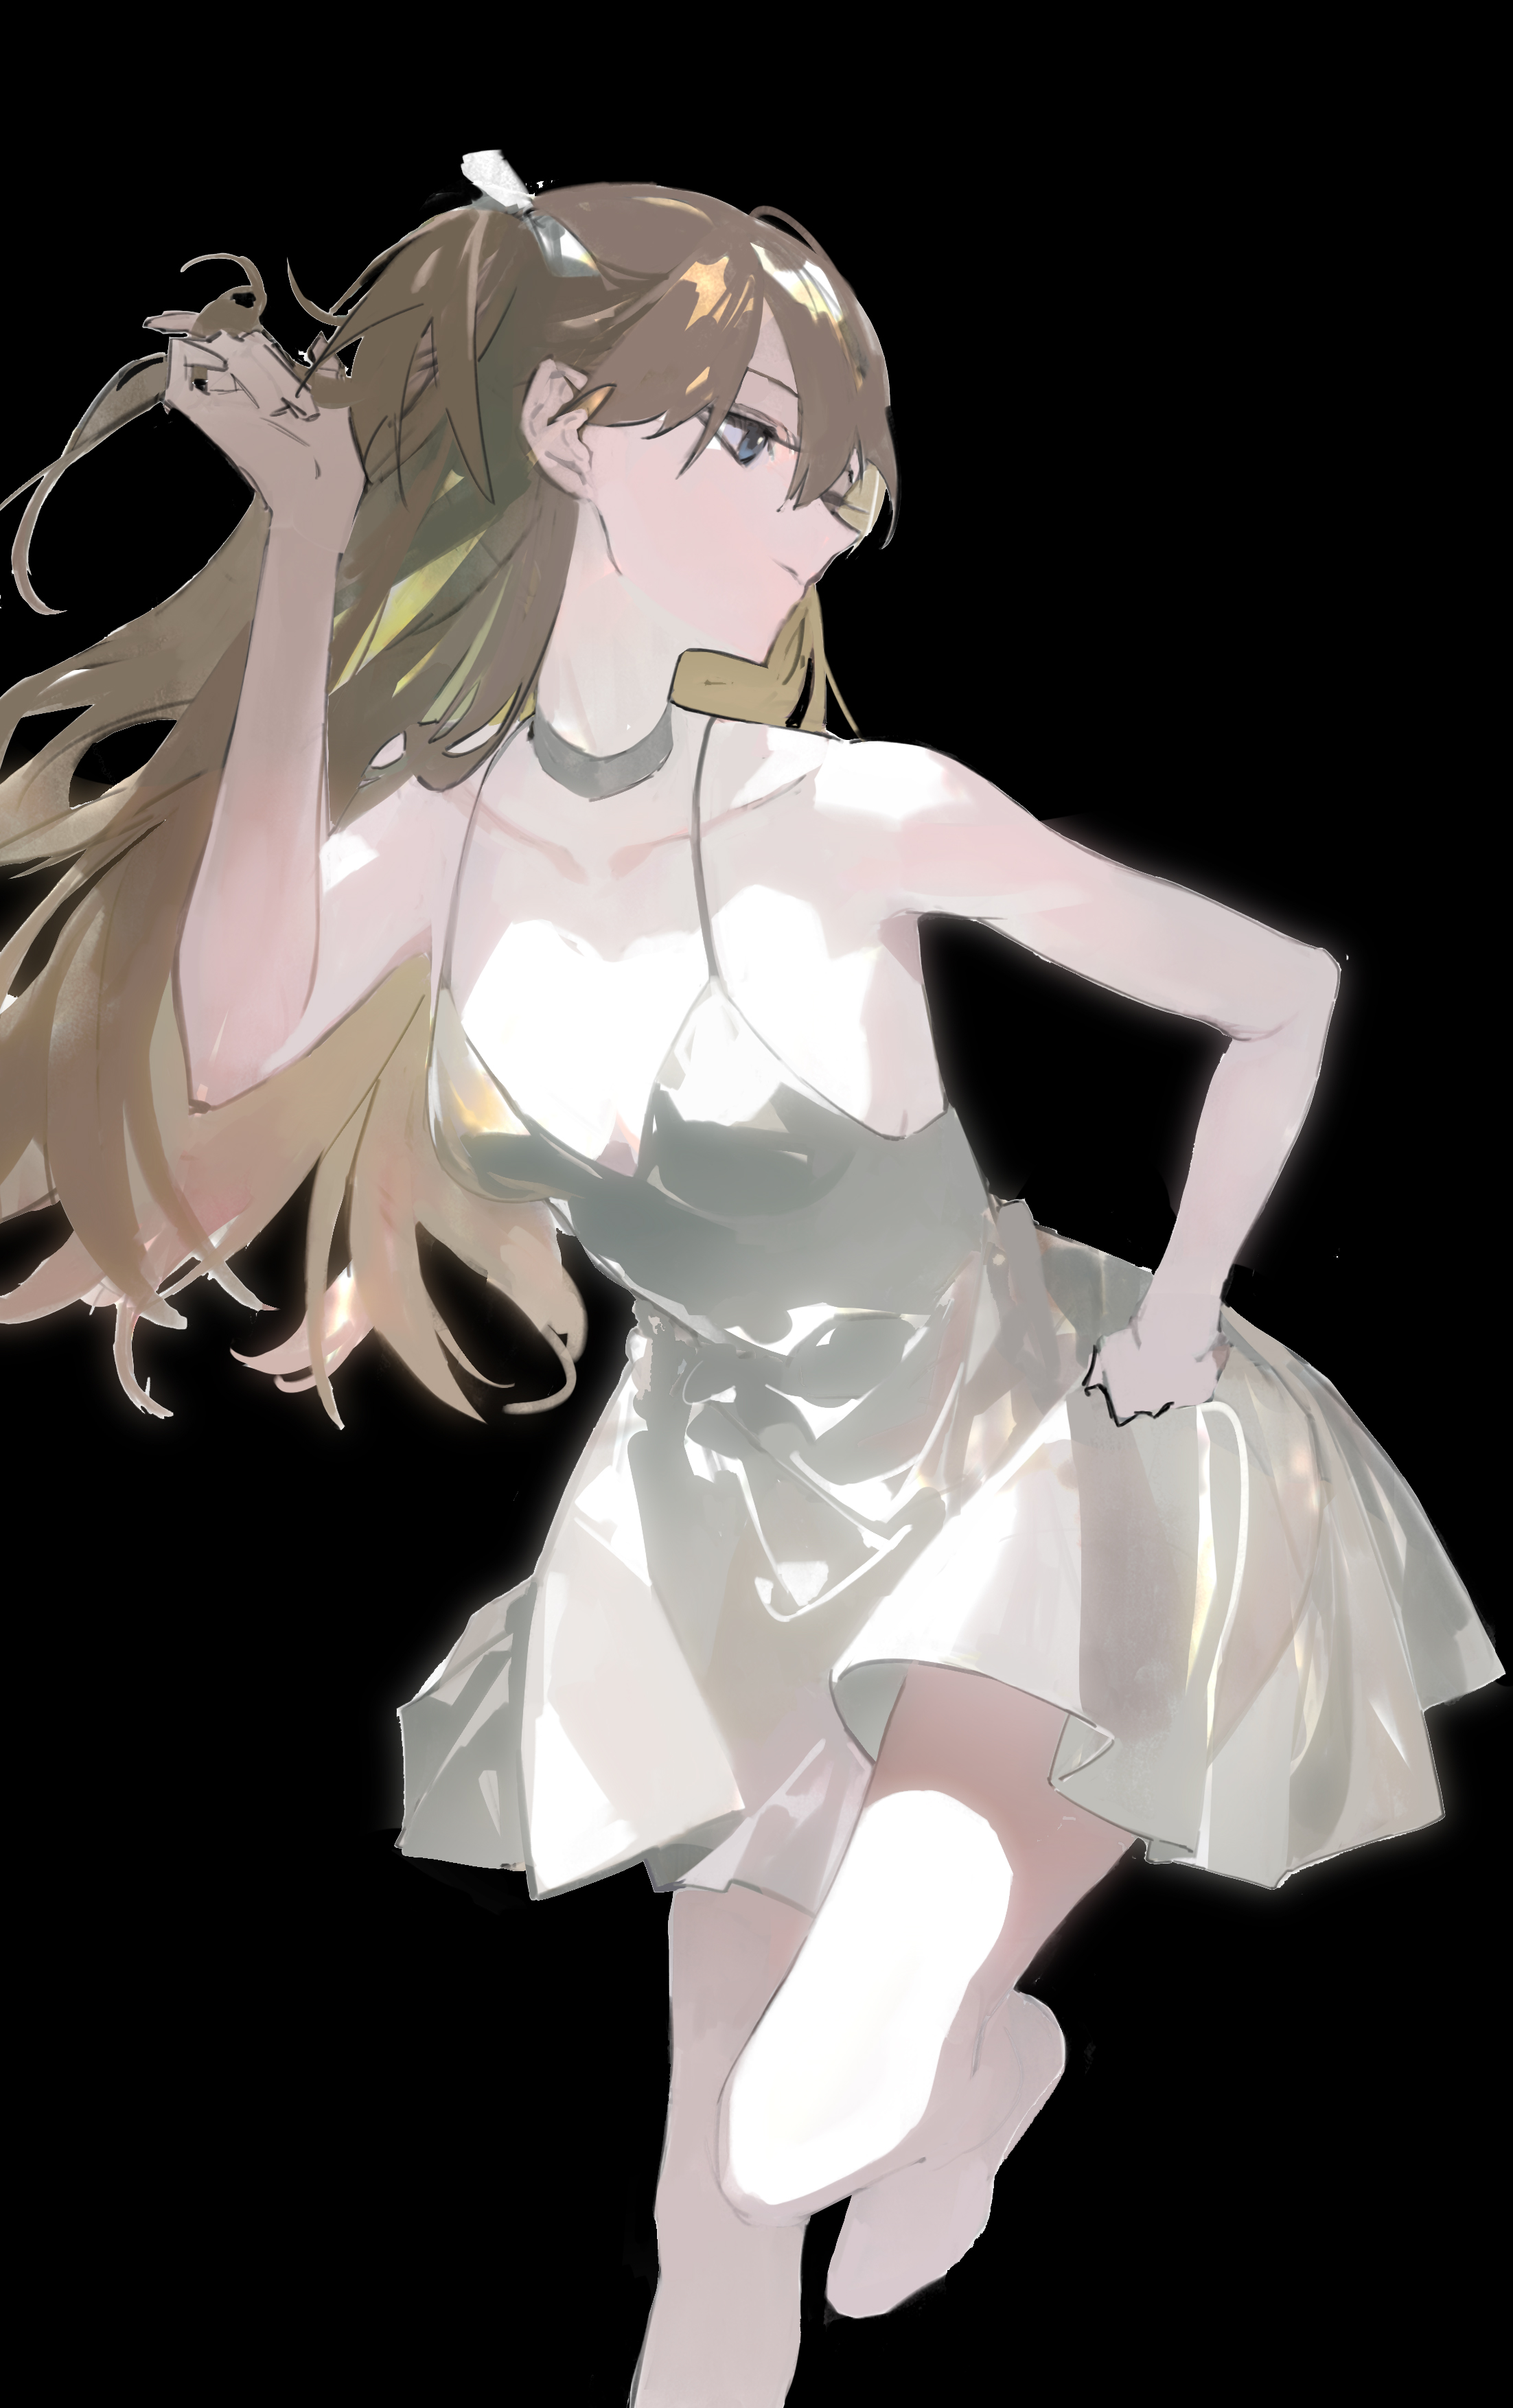 Songruan Anime Girls Asuka Langley Soryu Neon Genesis Evangelion 2204x3508